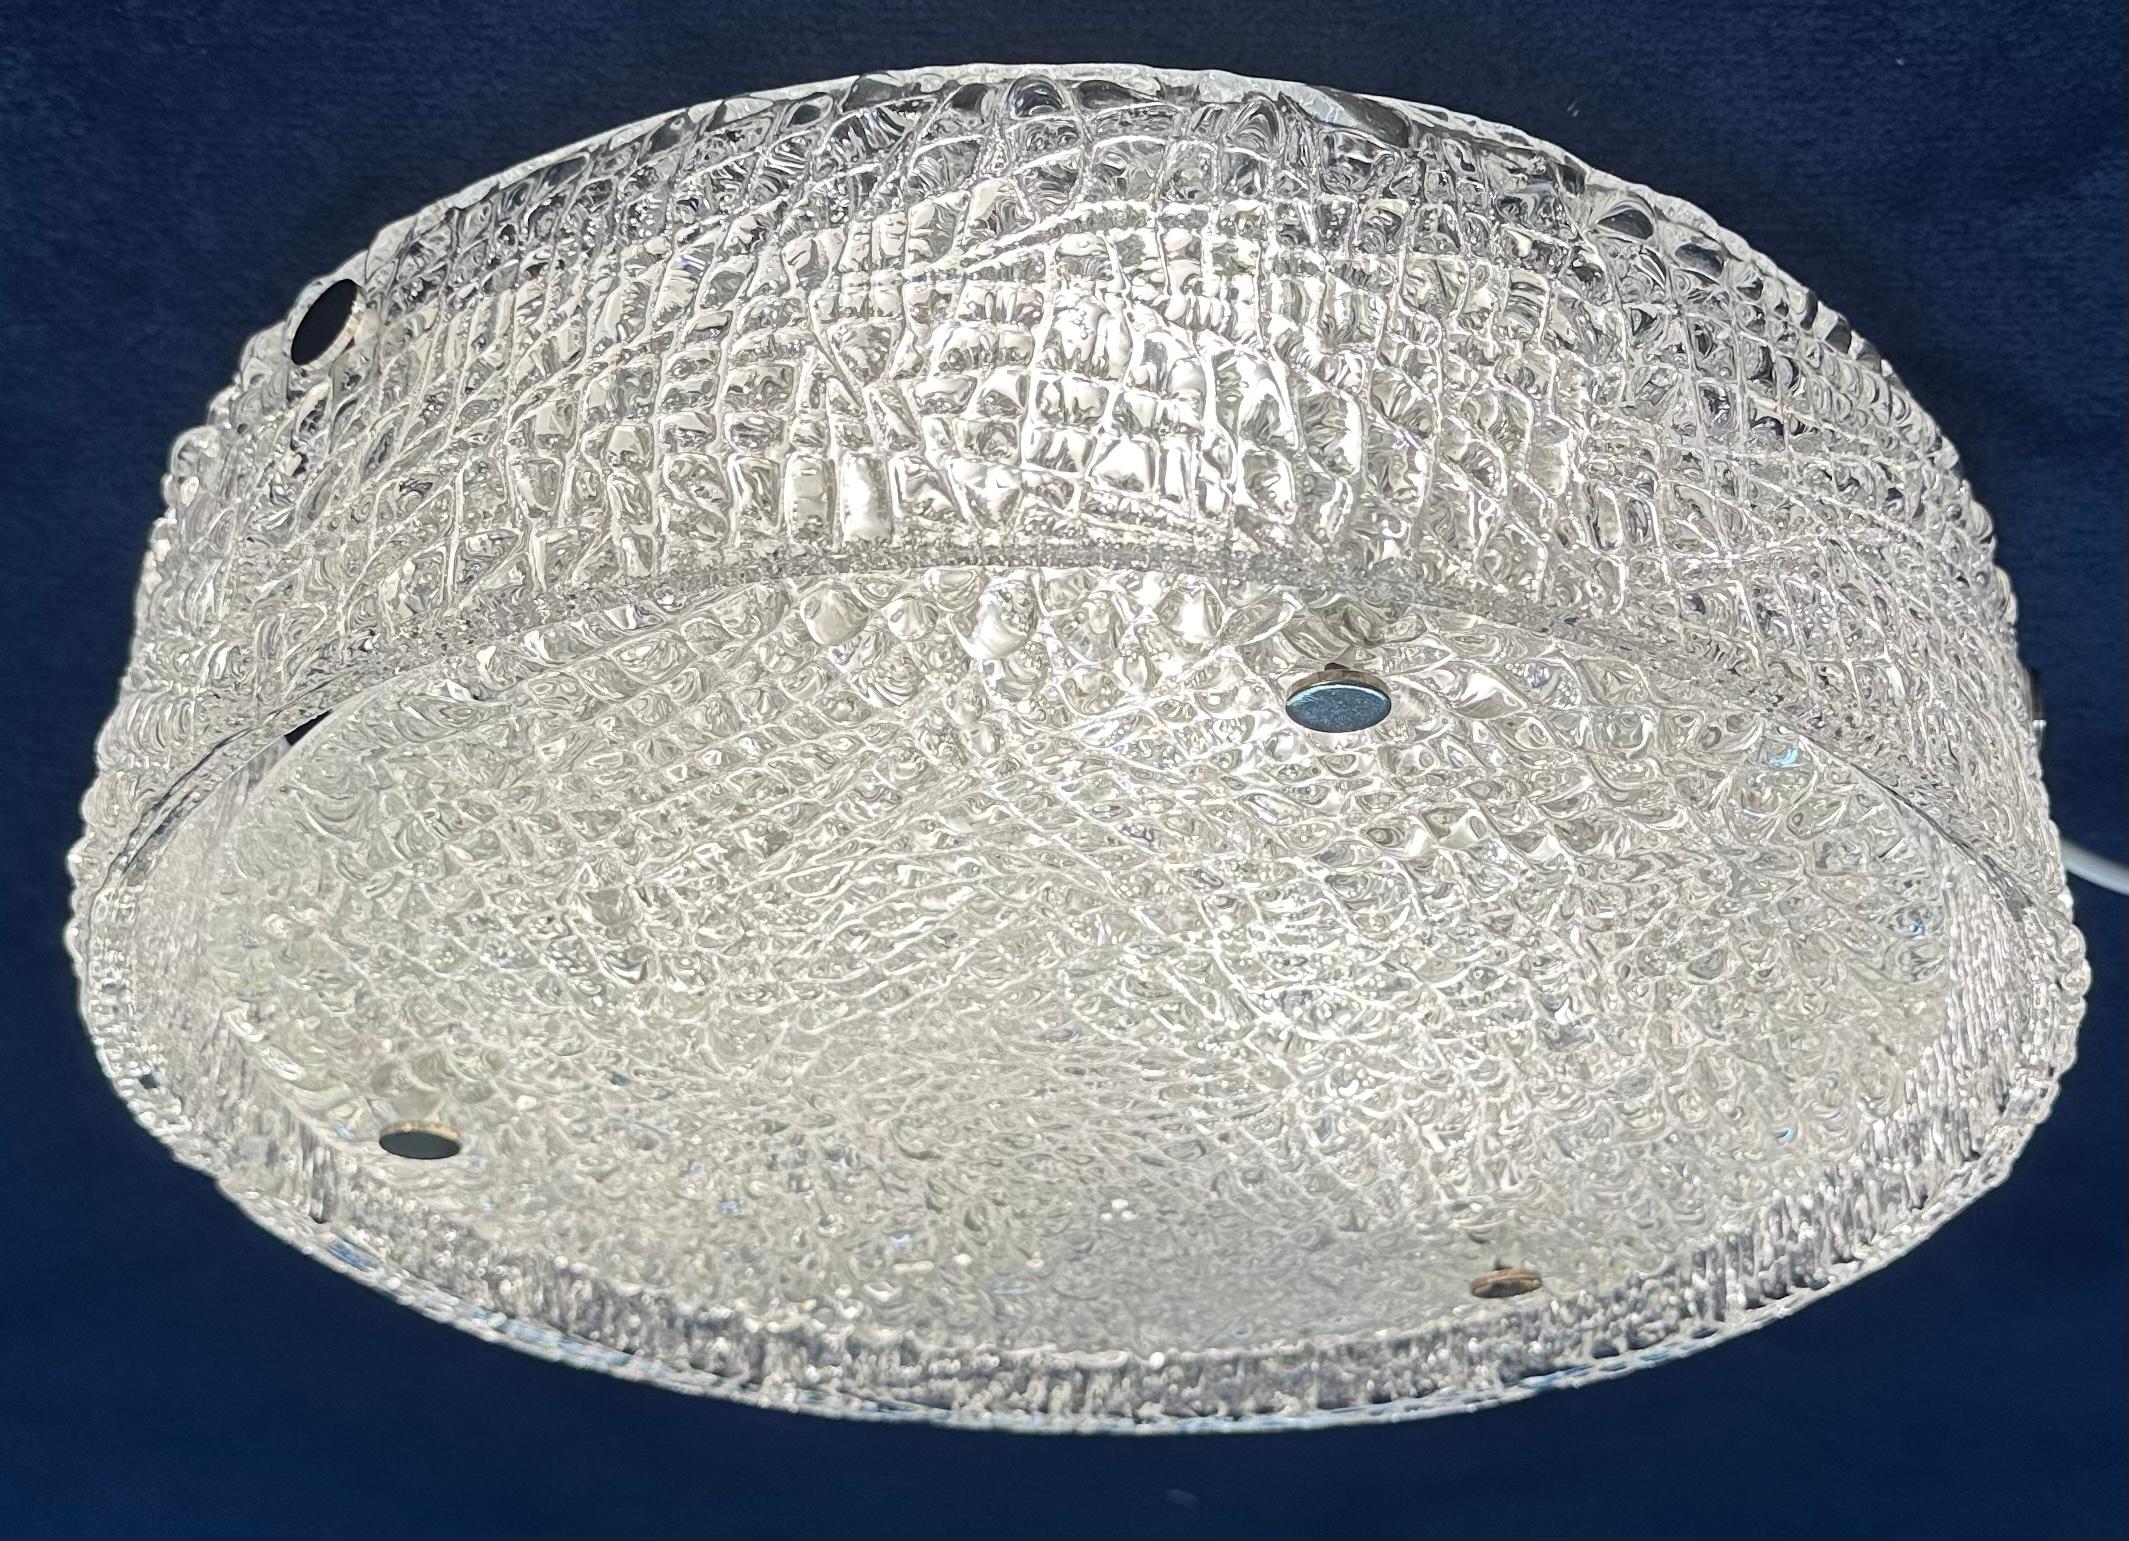 1960s German Kaiser Leuchten Textured Iced Glass Flush Mount Ceiling Light For Sale 2